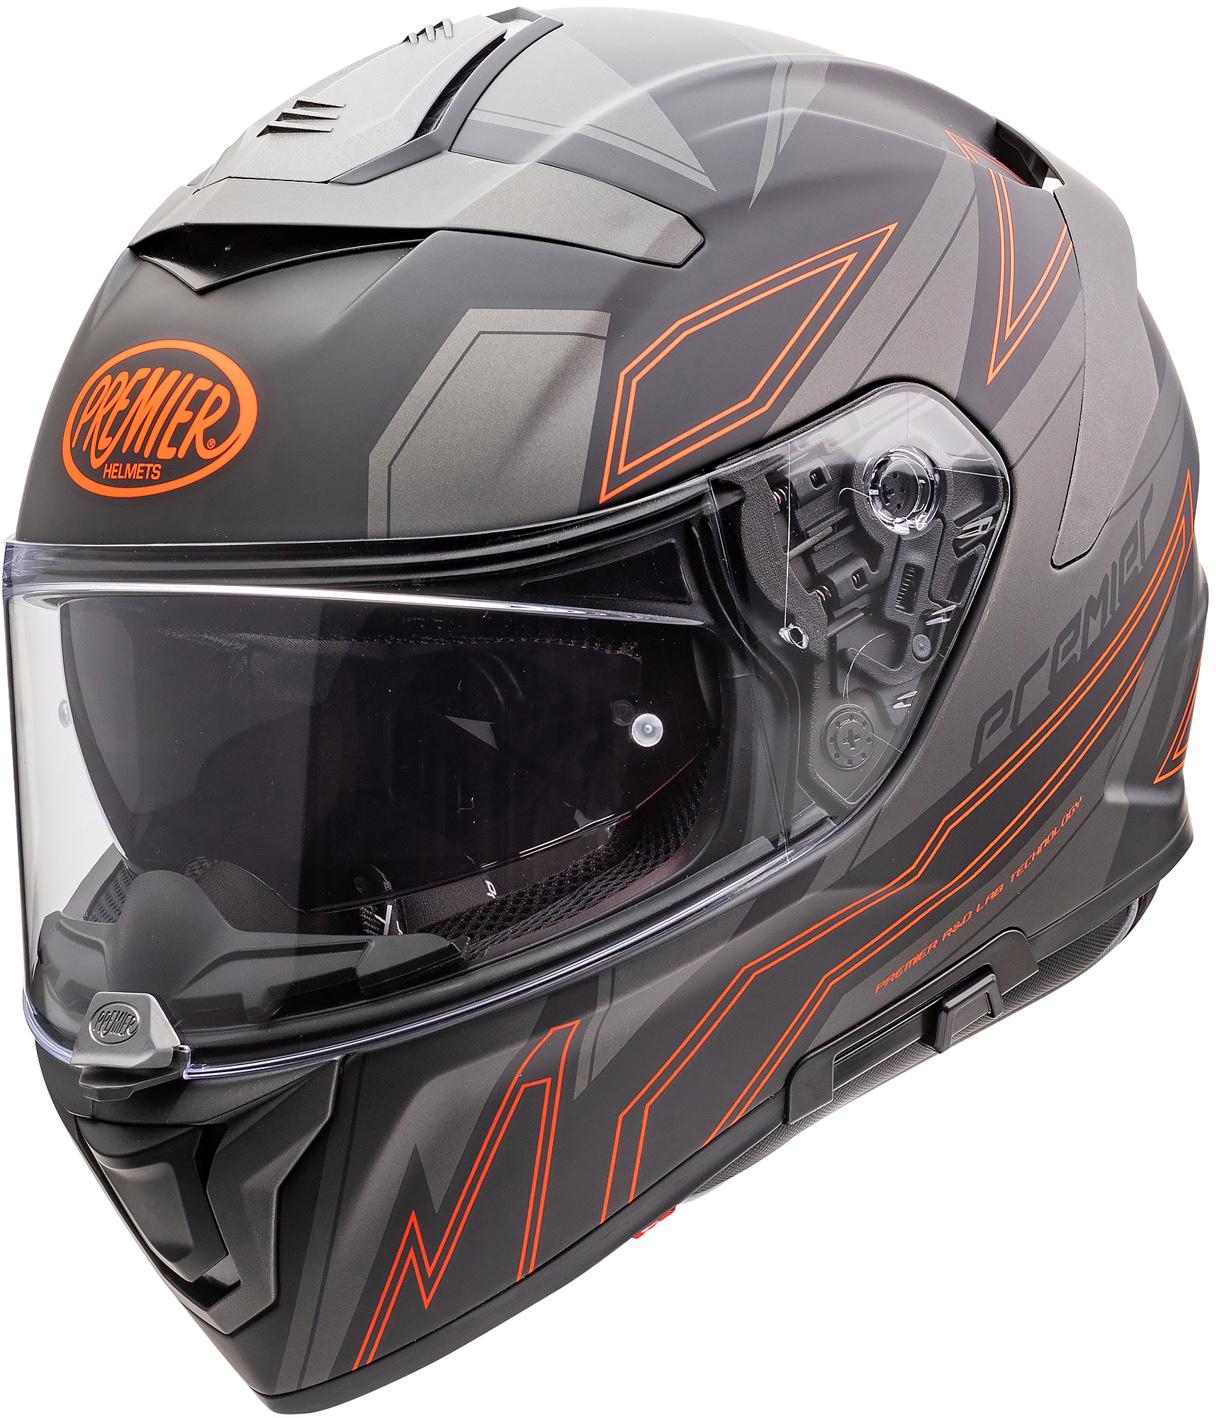 Premier Devil El Full Face Motorcycle Helmet - Black/Orange, M